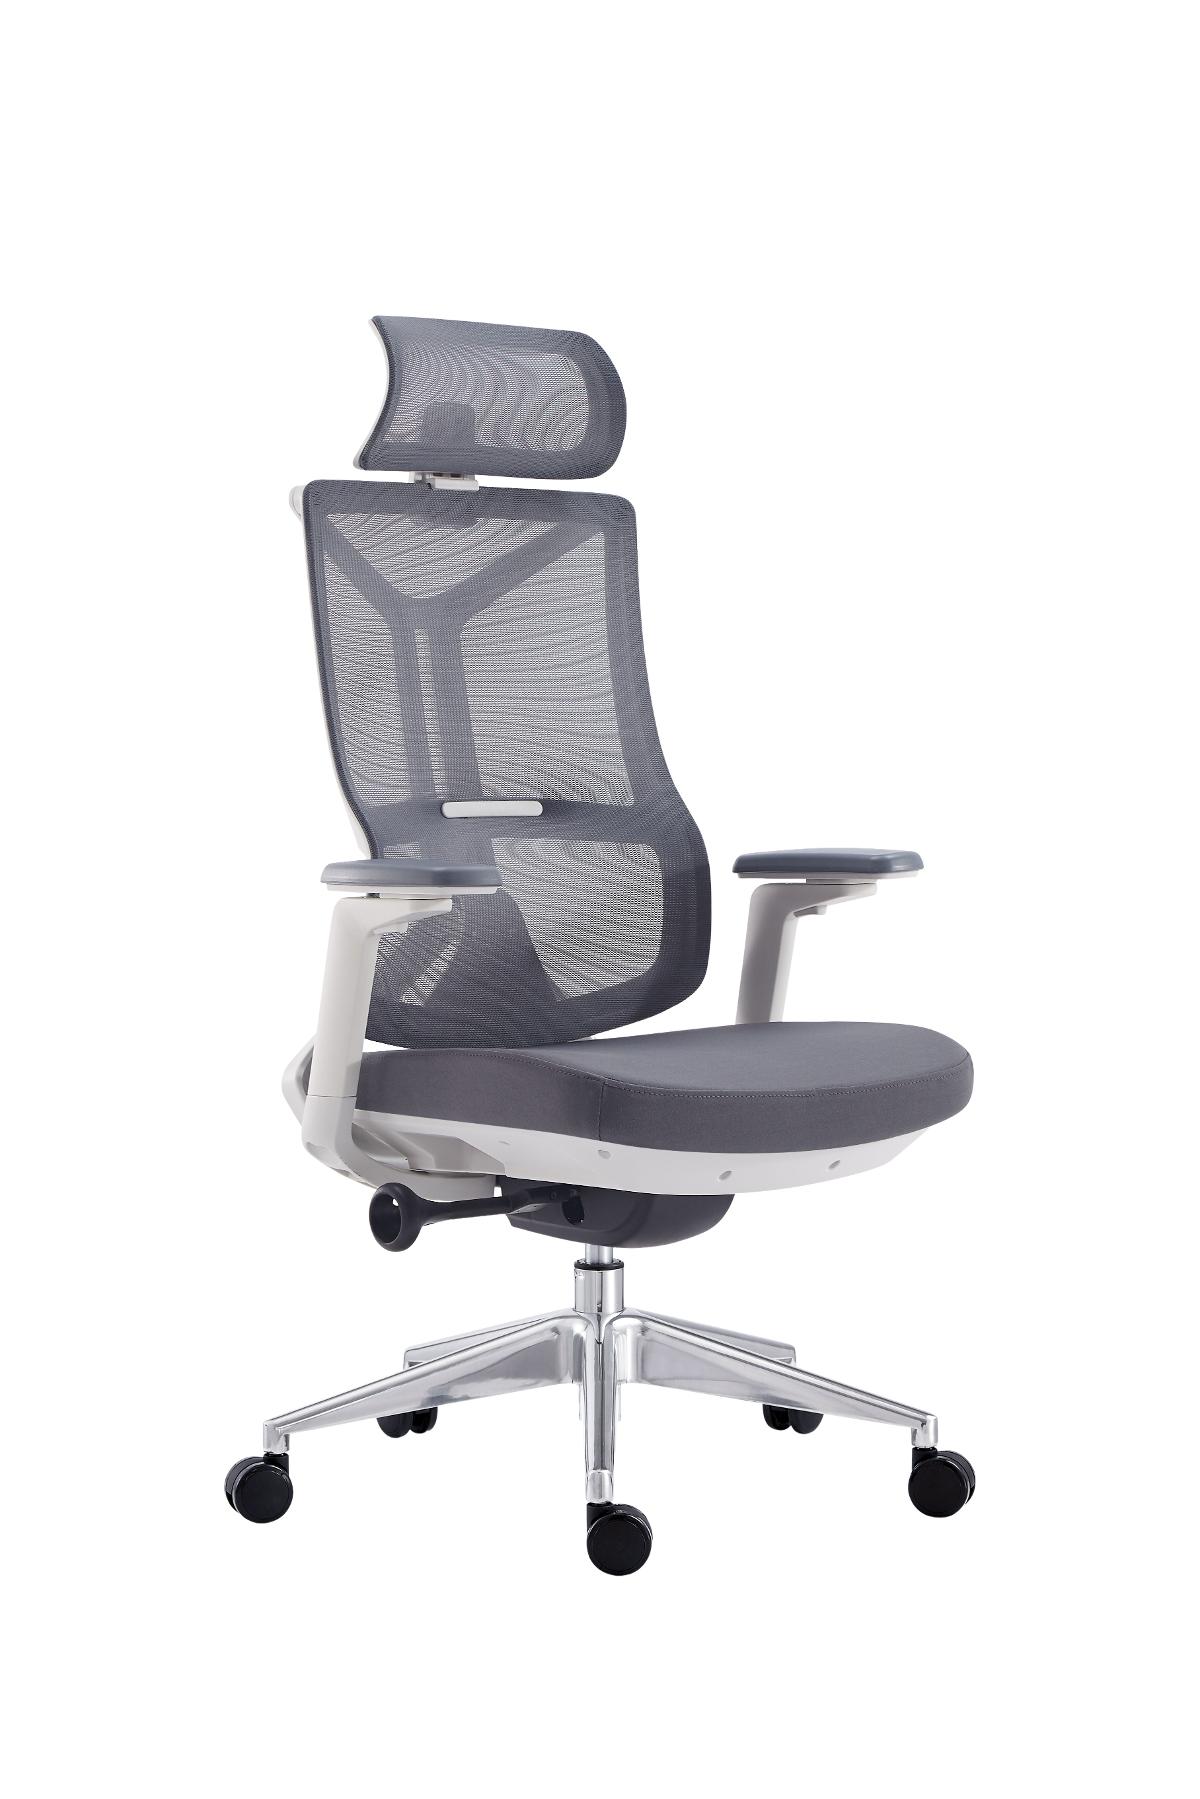 Super Chair เก้าอี้ผู้บริหาร รุ่น CEO WHITE H